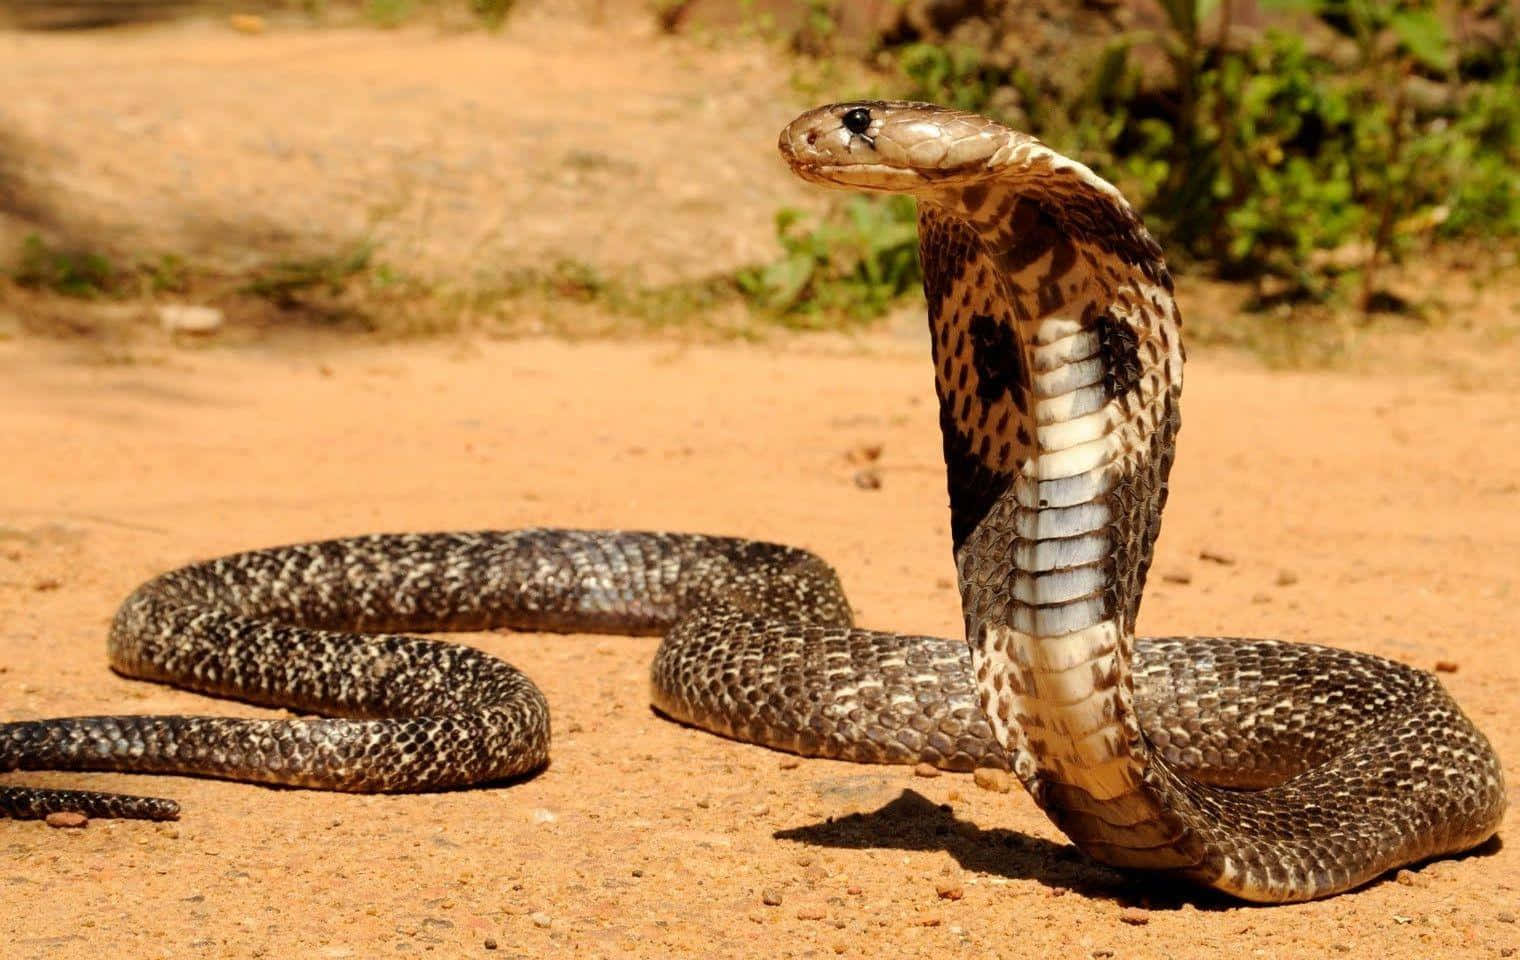 A fierce cobra snake winding around a branch.